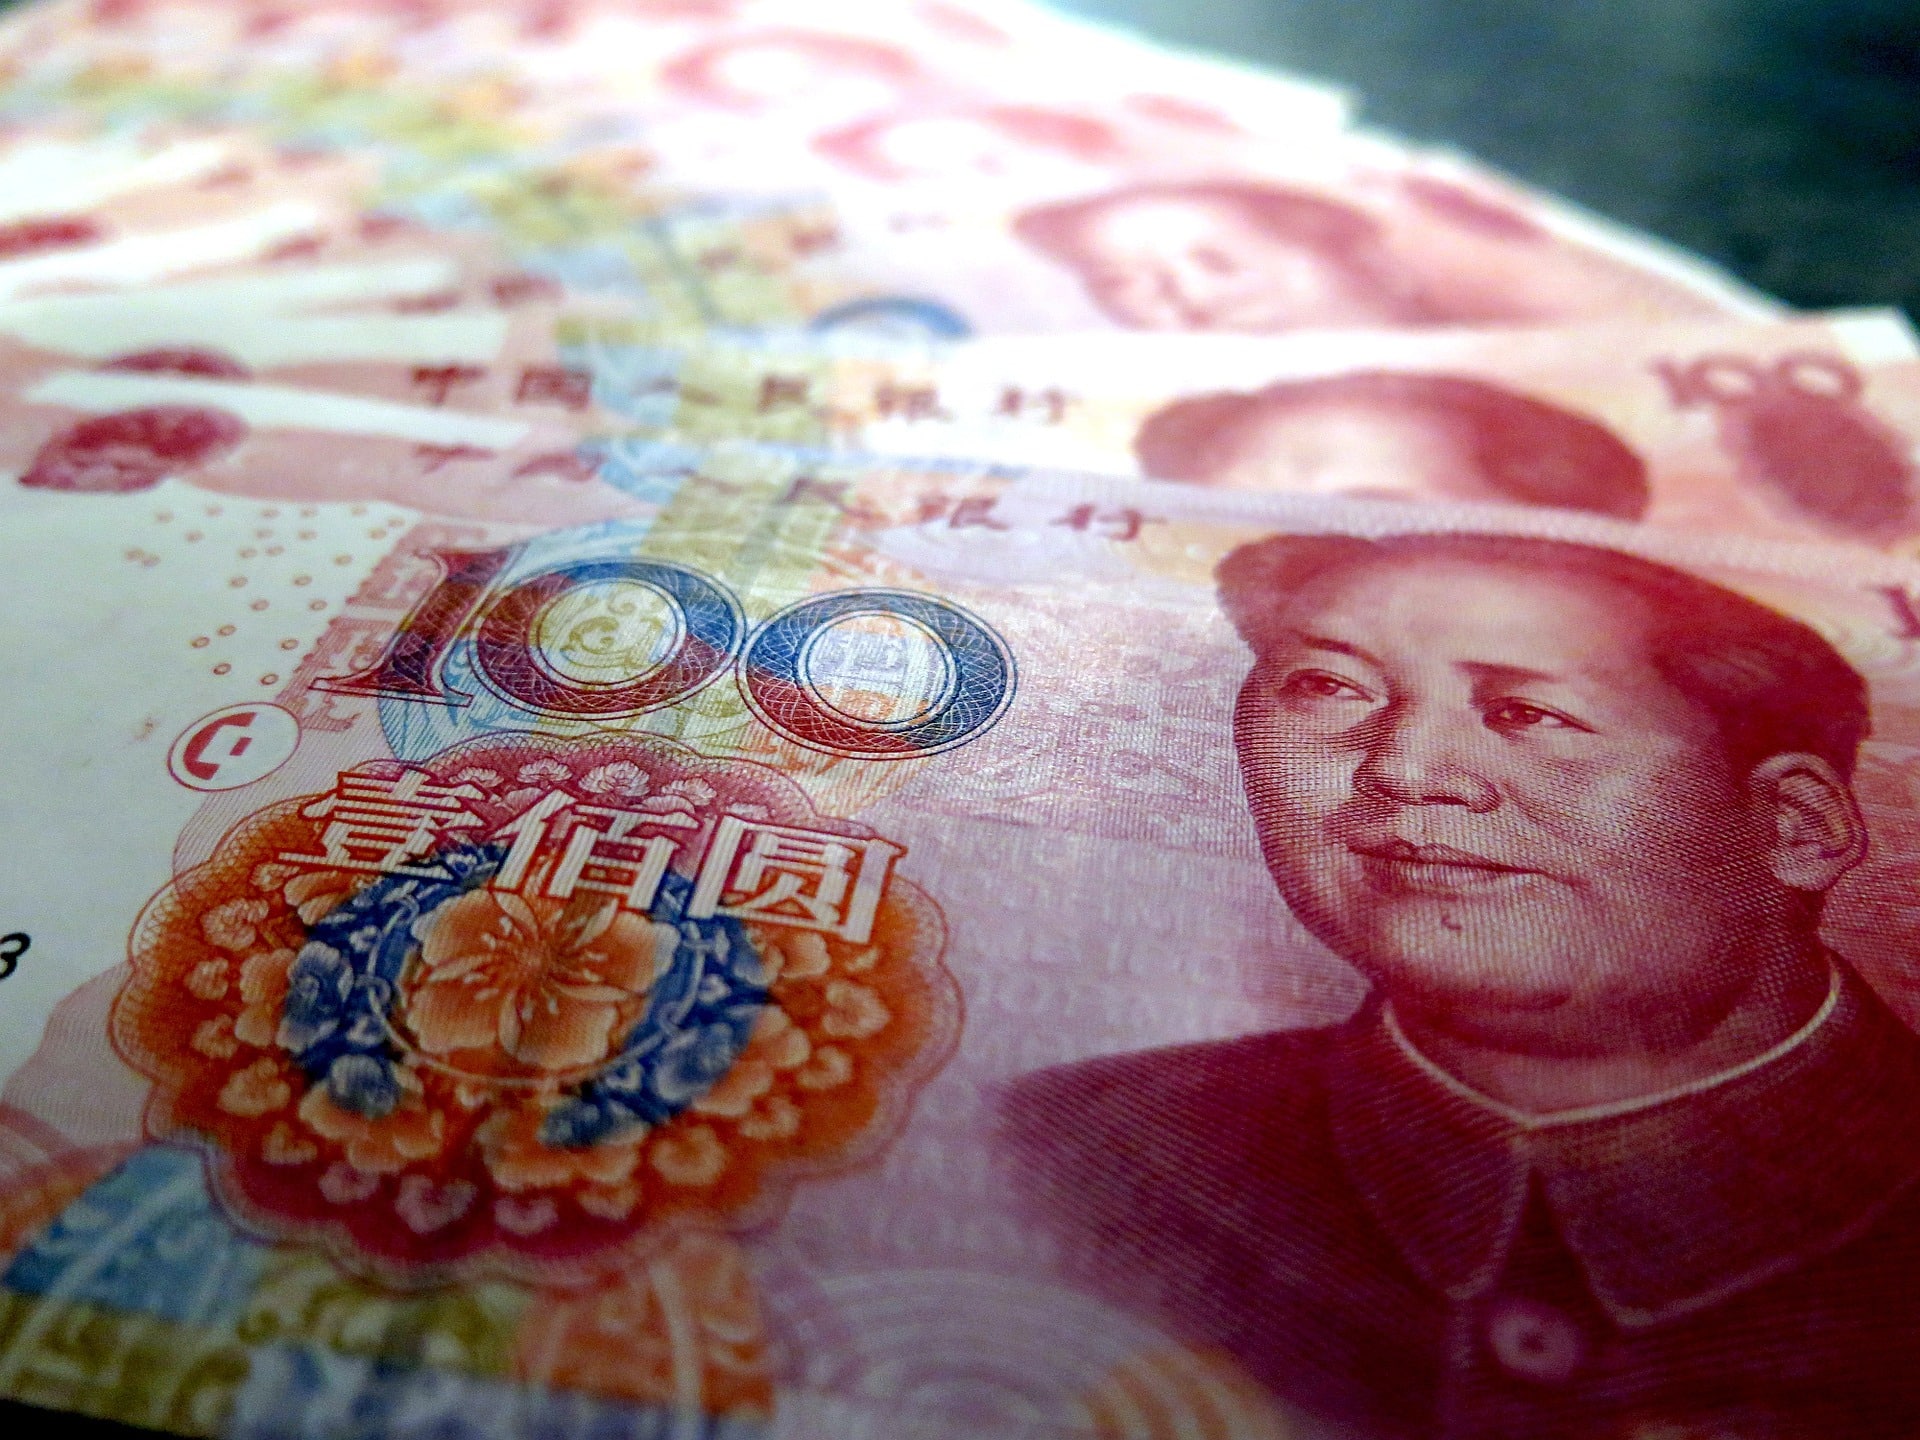 Yuan bills